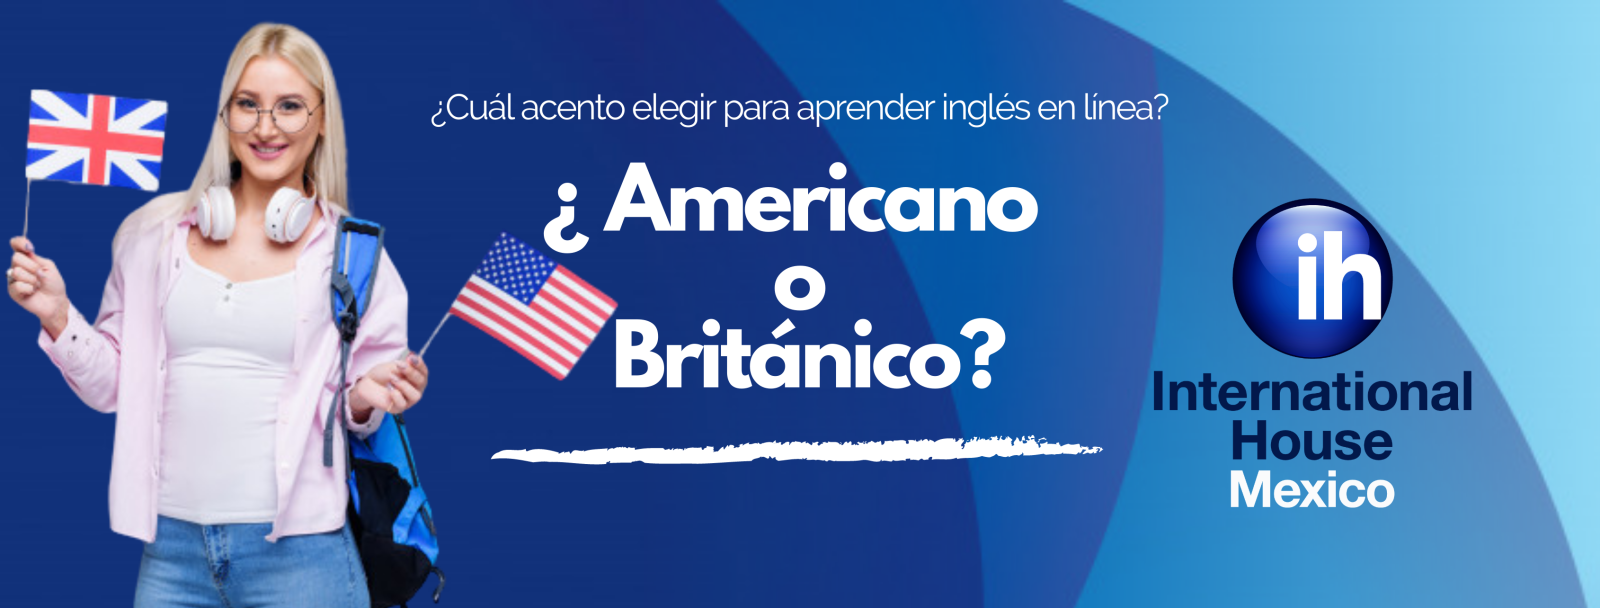 Acento en inglés británico vs americano